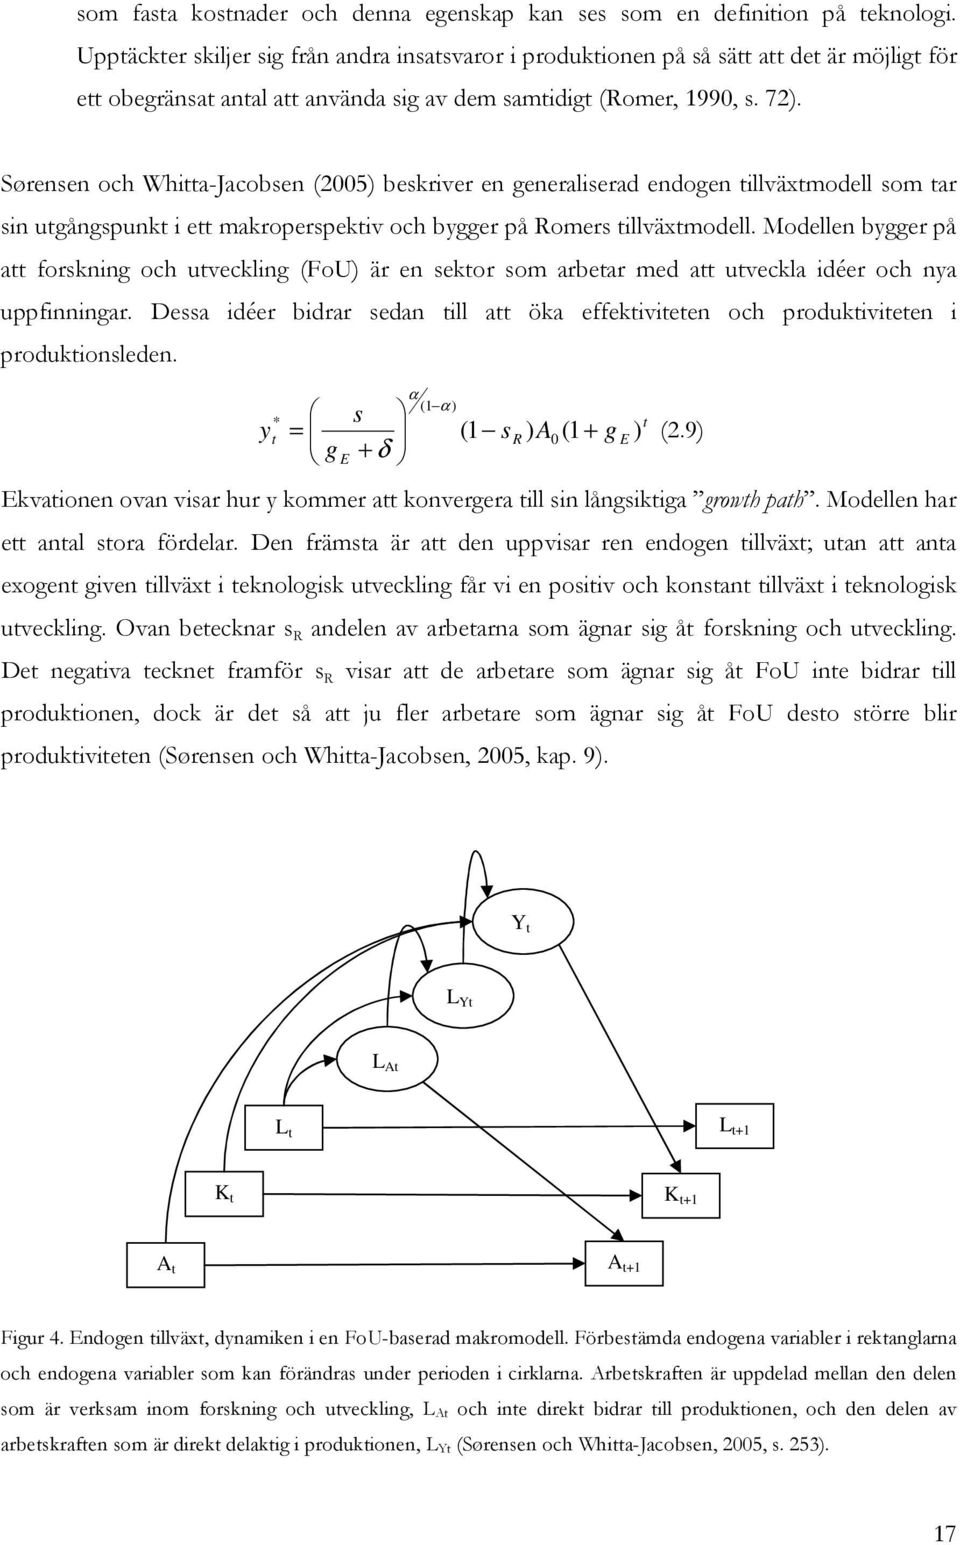 Sørensen och Whia-Jacobsen (2005) beskriver en generaliserad endogen illväxmodell som ar sin ugångspunk i e makroperspekiv och bygger på Romers illväxmodell.